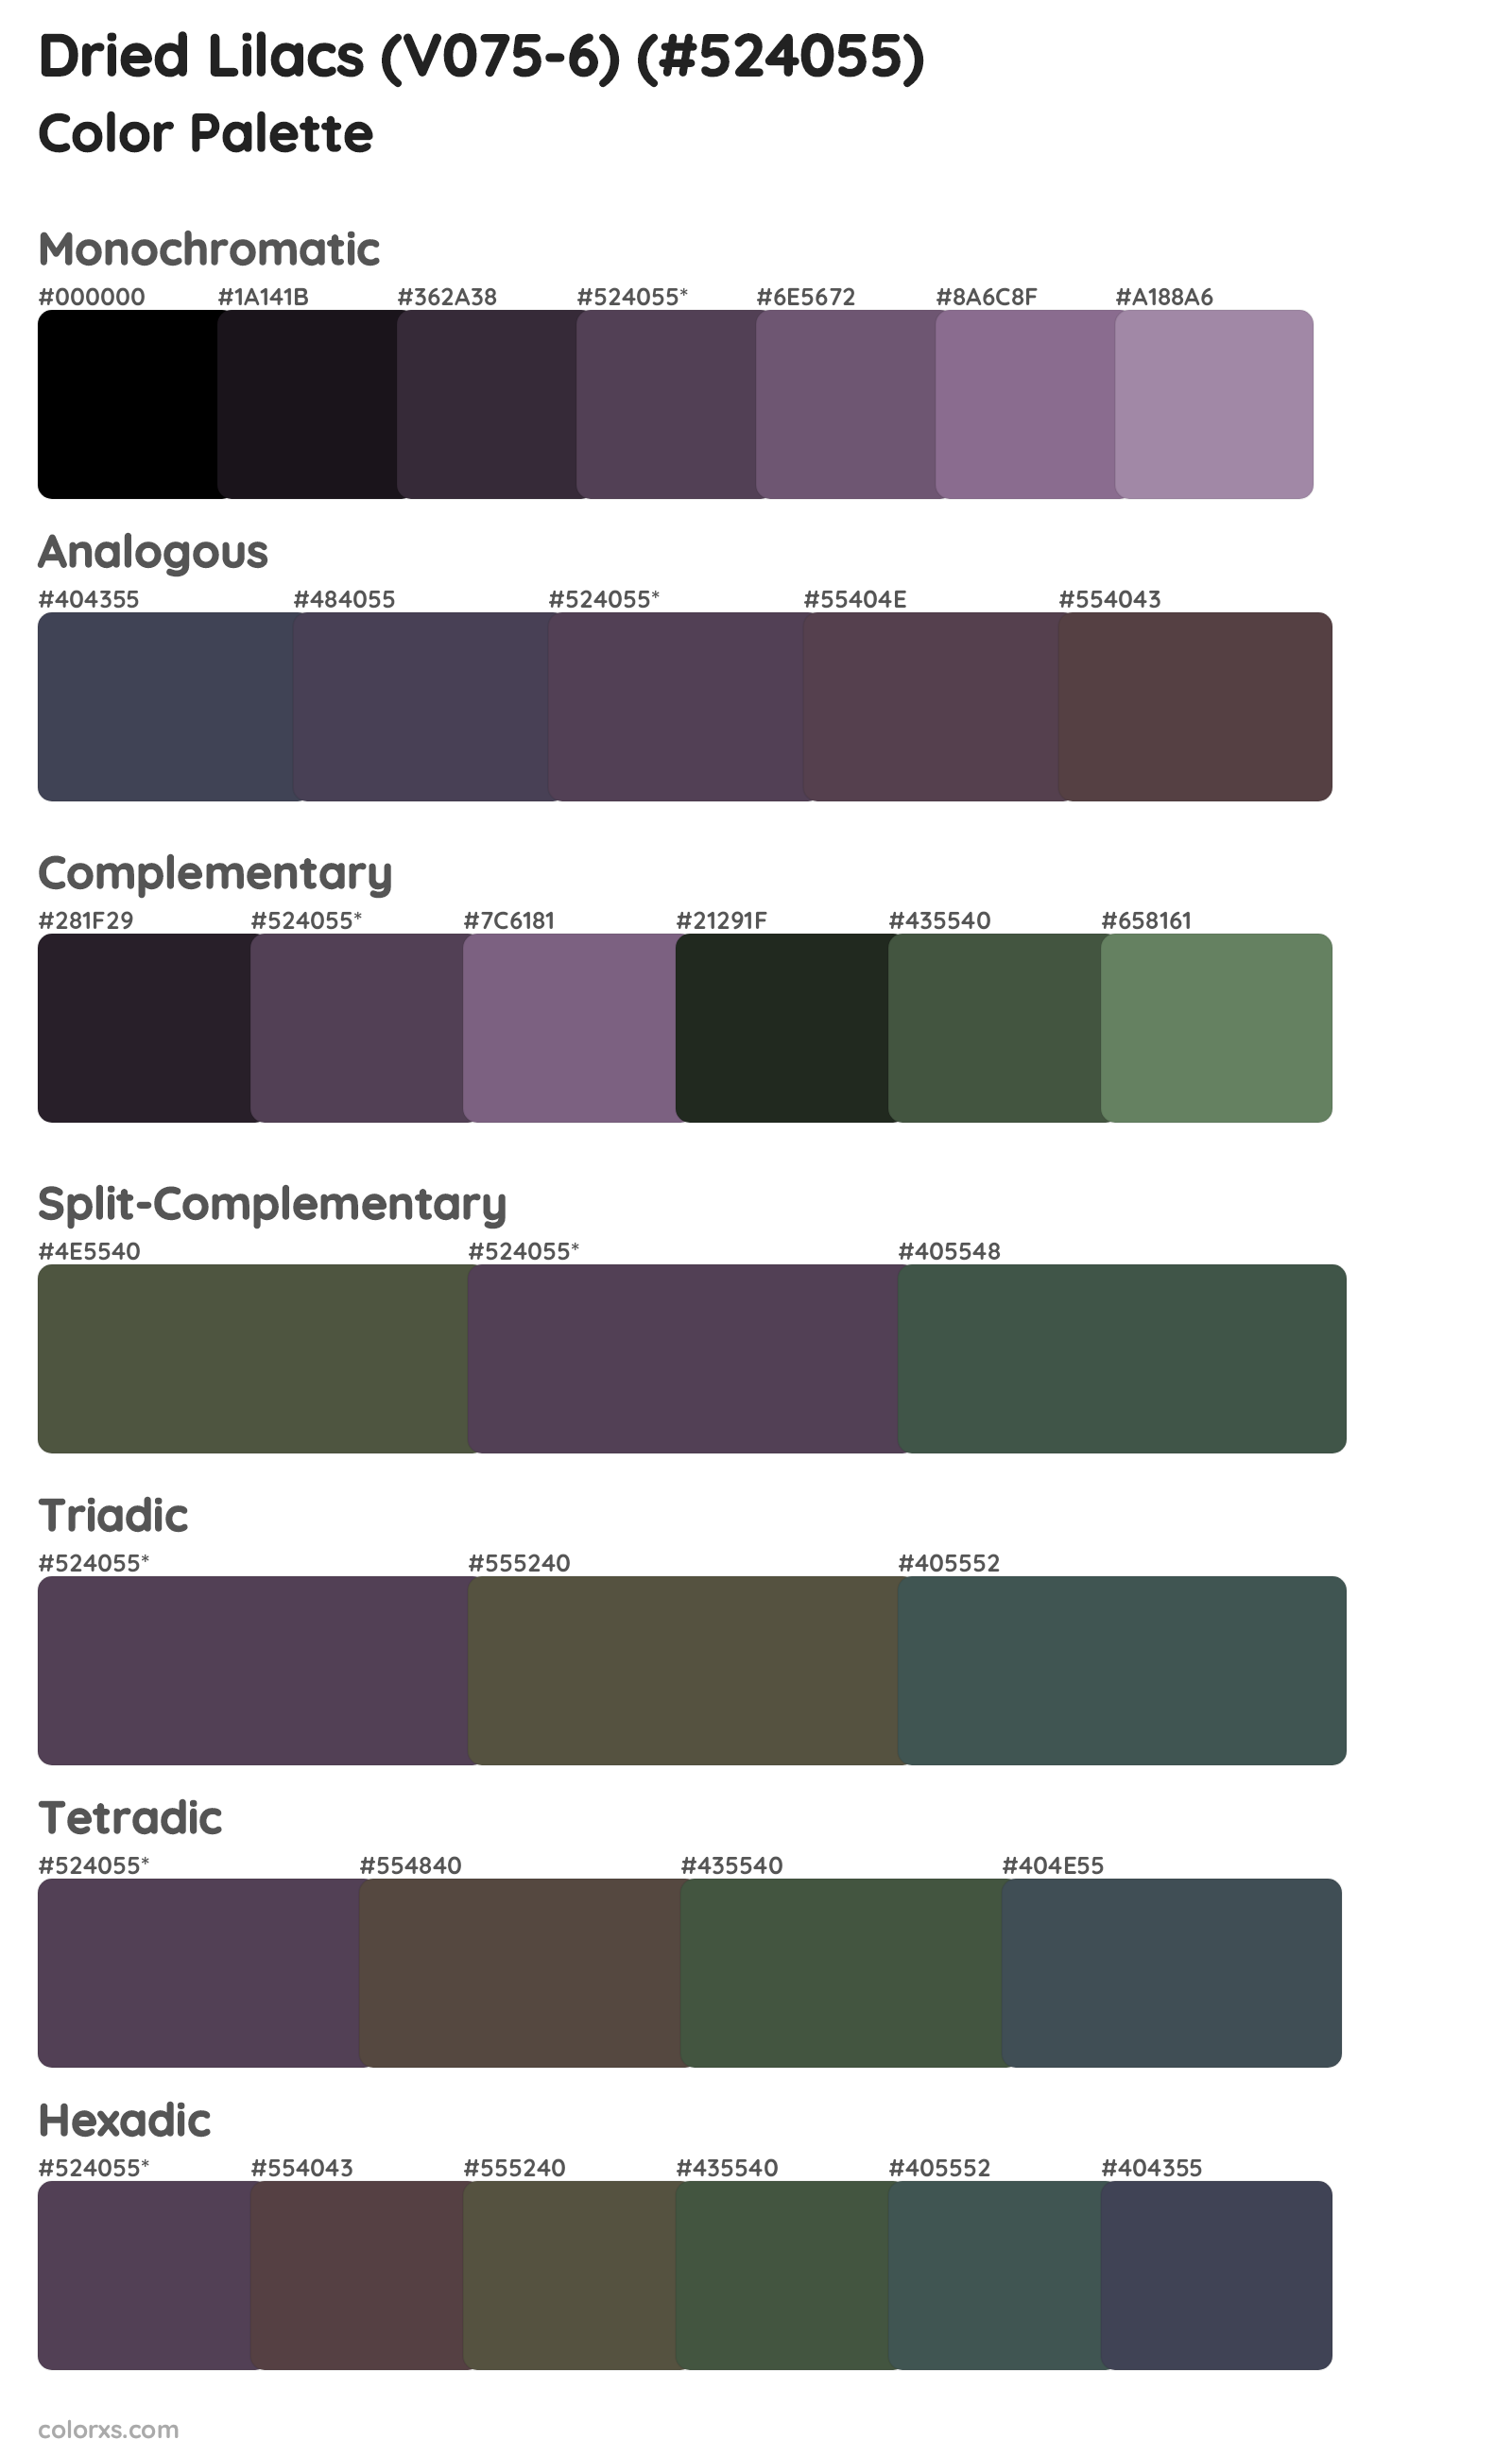 Dried Lilacs (V075-6) Color Scheme Palettes